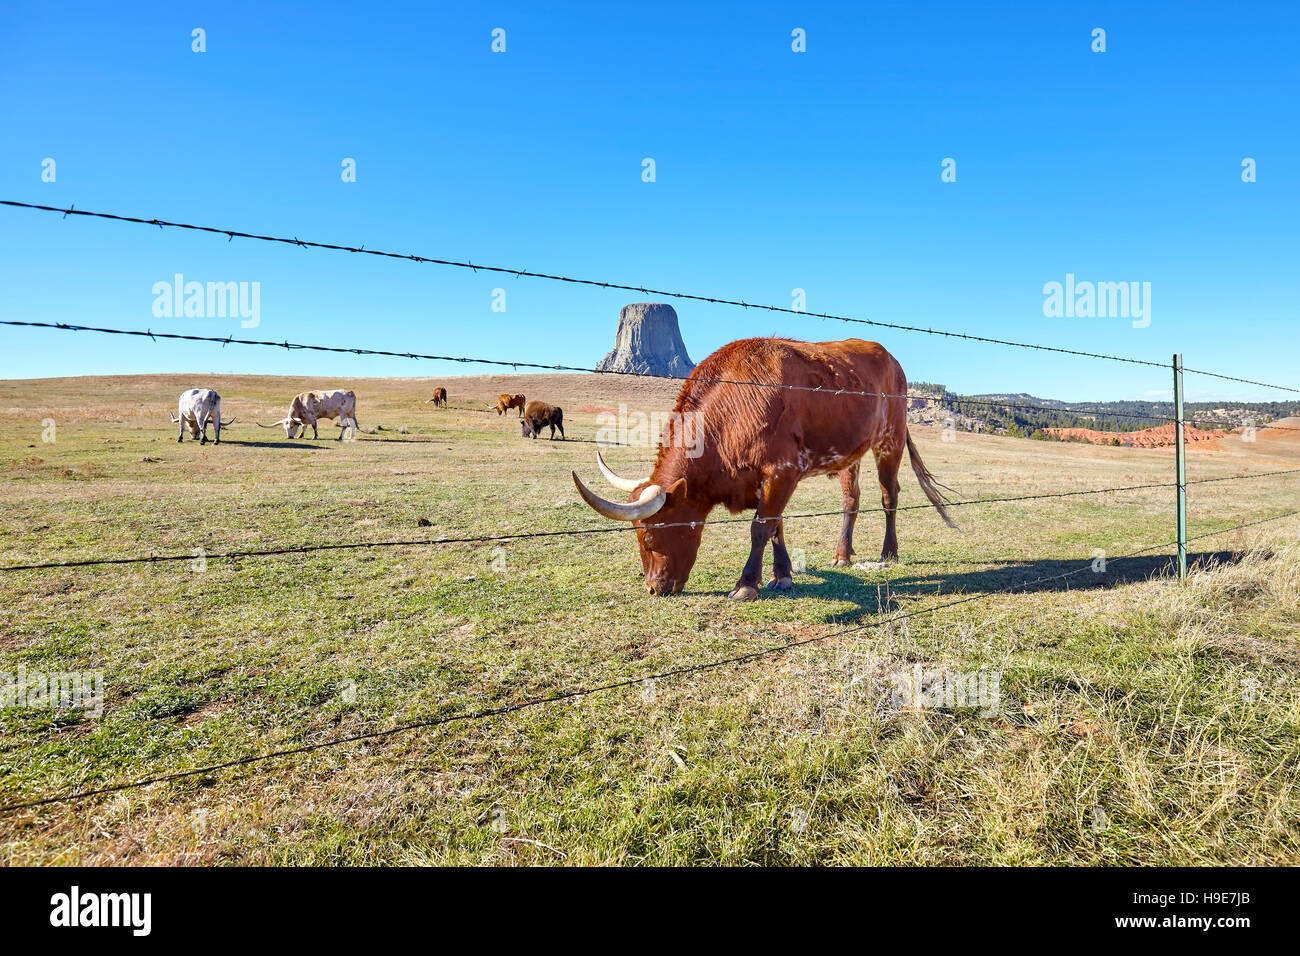 Vieh hinter Stacheldrahtzaun mit Devils Tower in Ferne, Top-Attraktion in Wyoming State, USA. Stockfoto